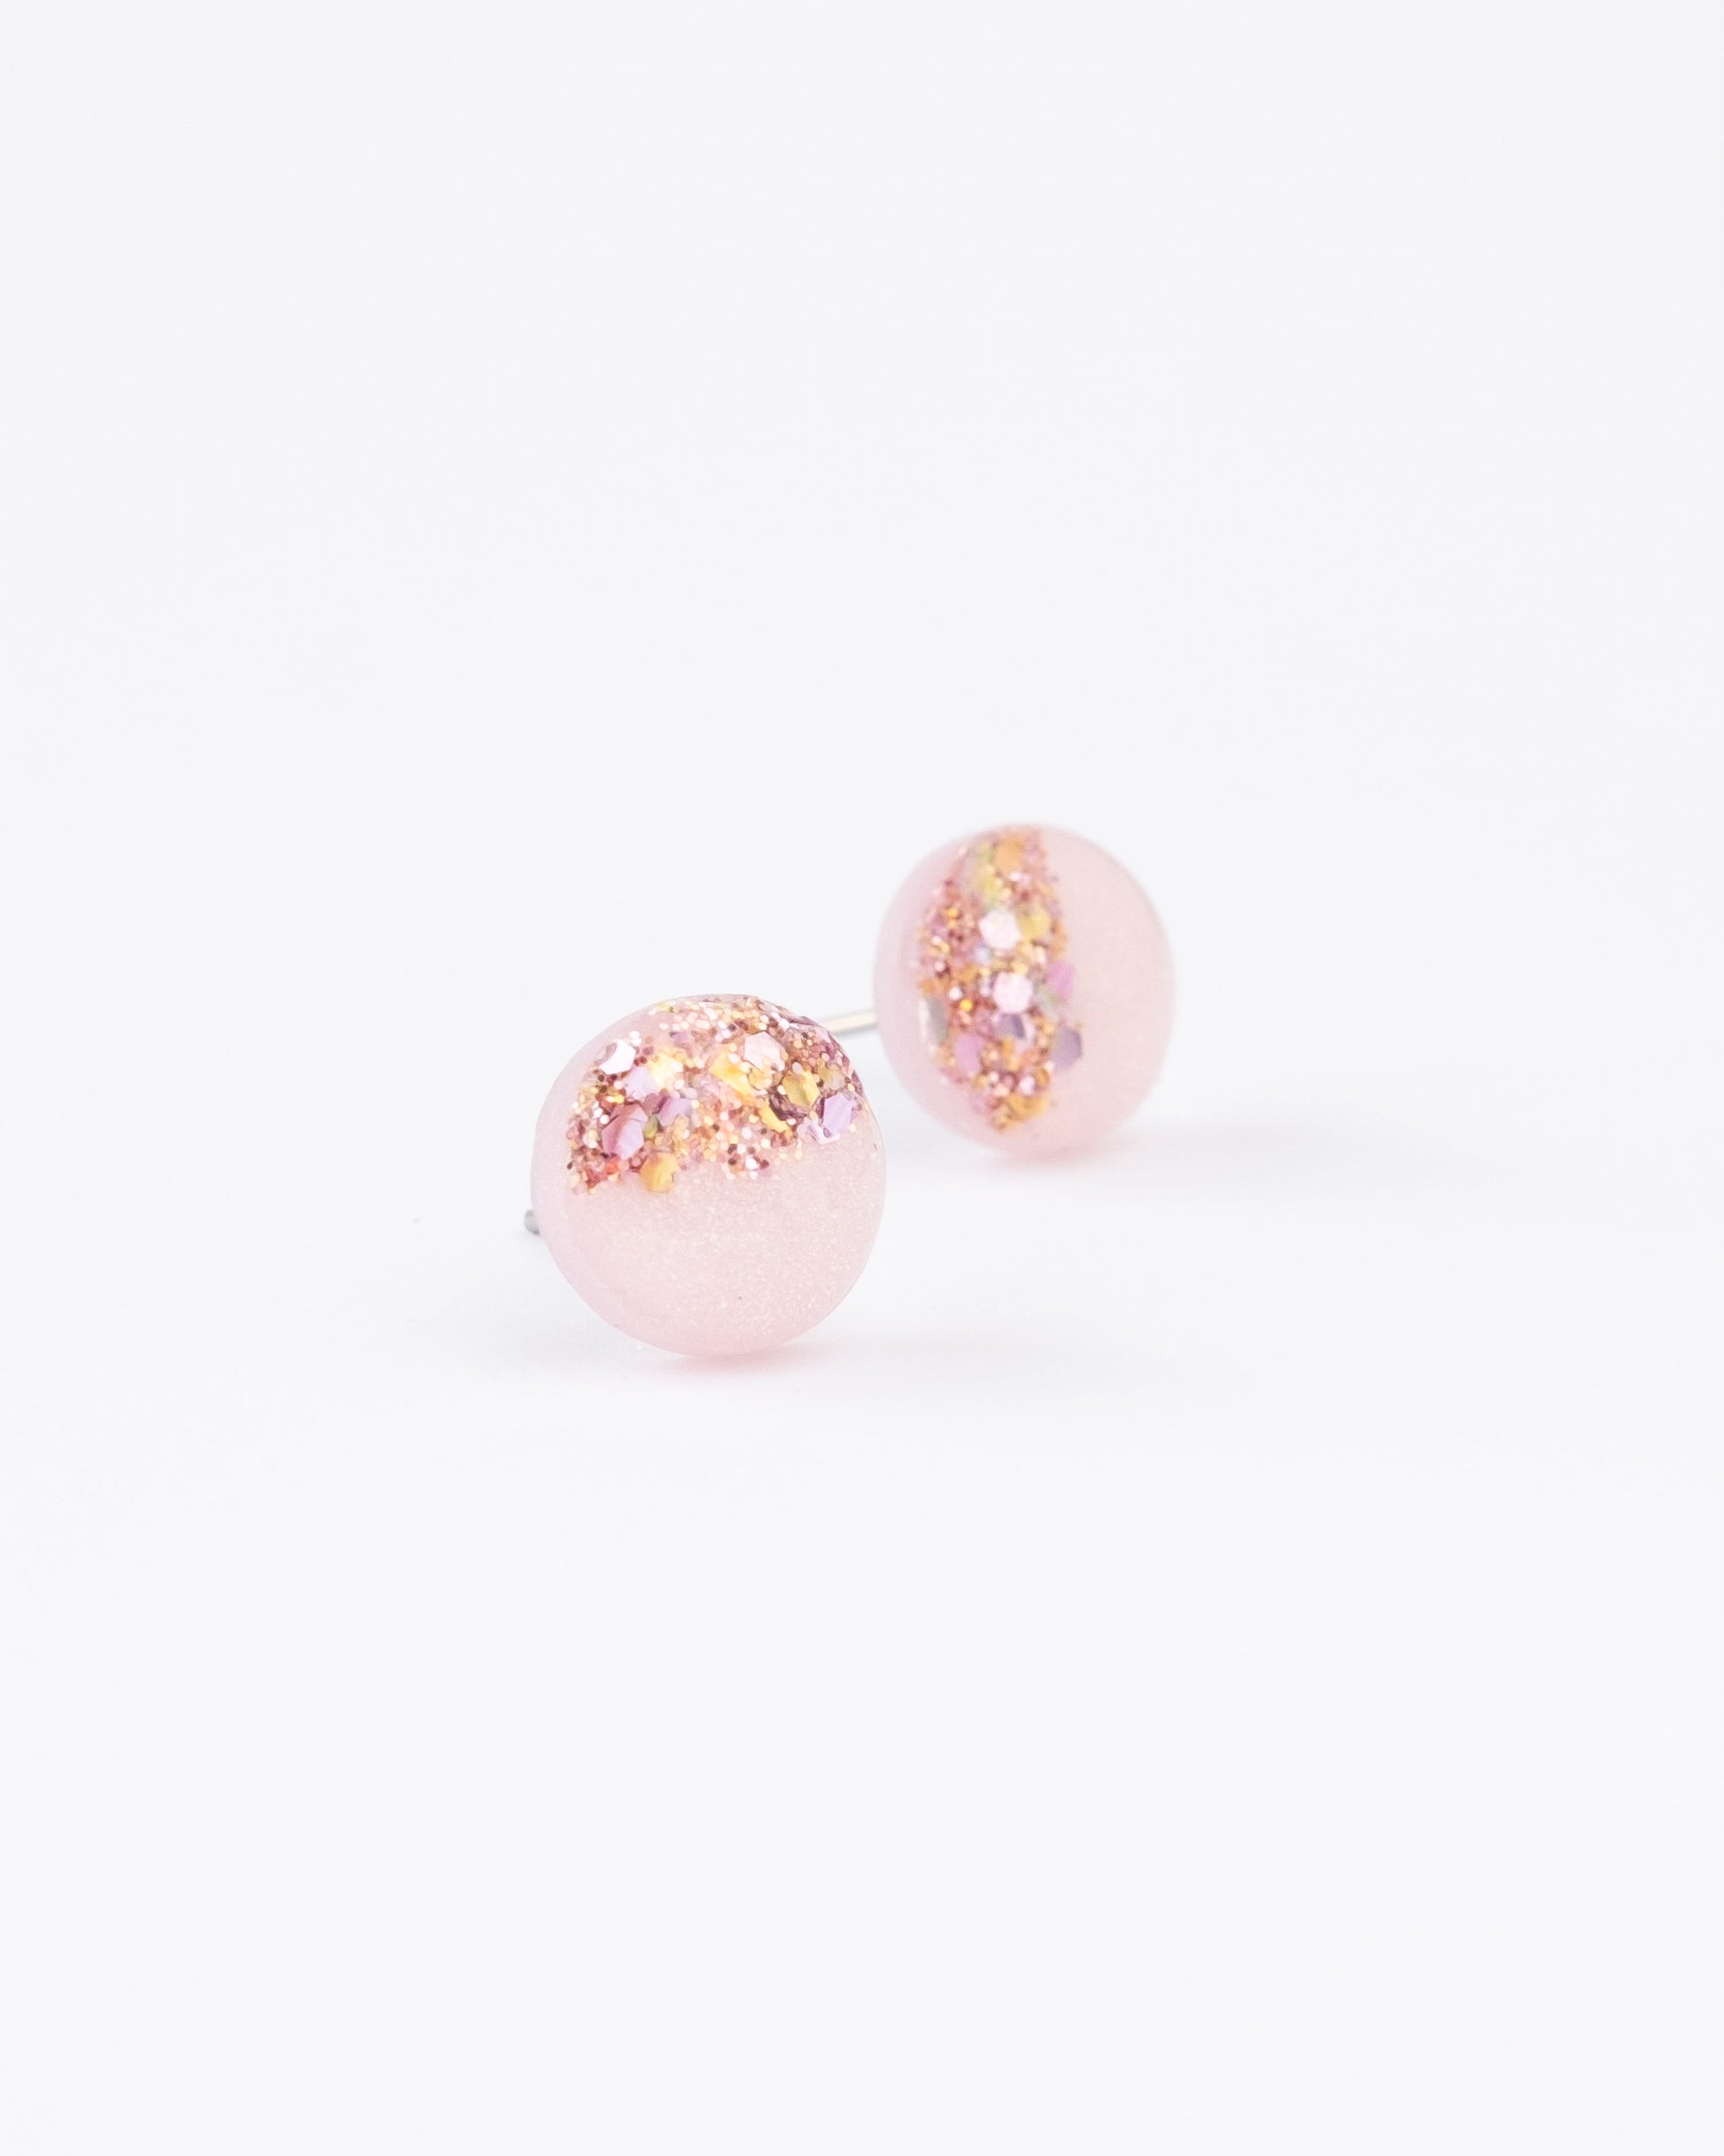 Rose pink glitter stud earrings freeshipping - Ollijewelry